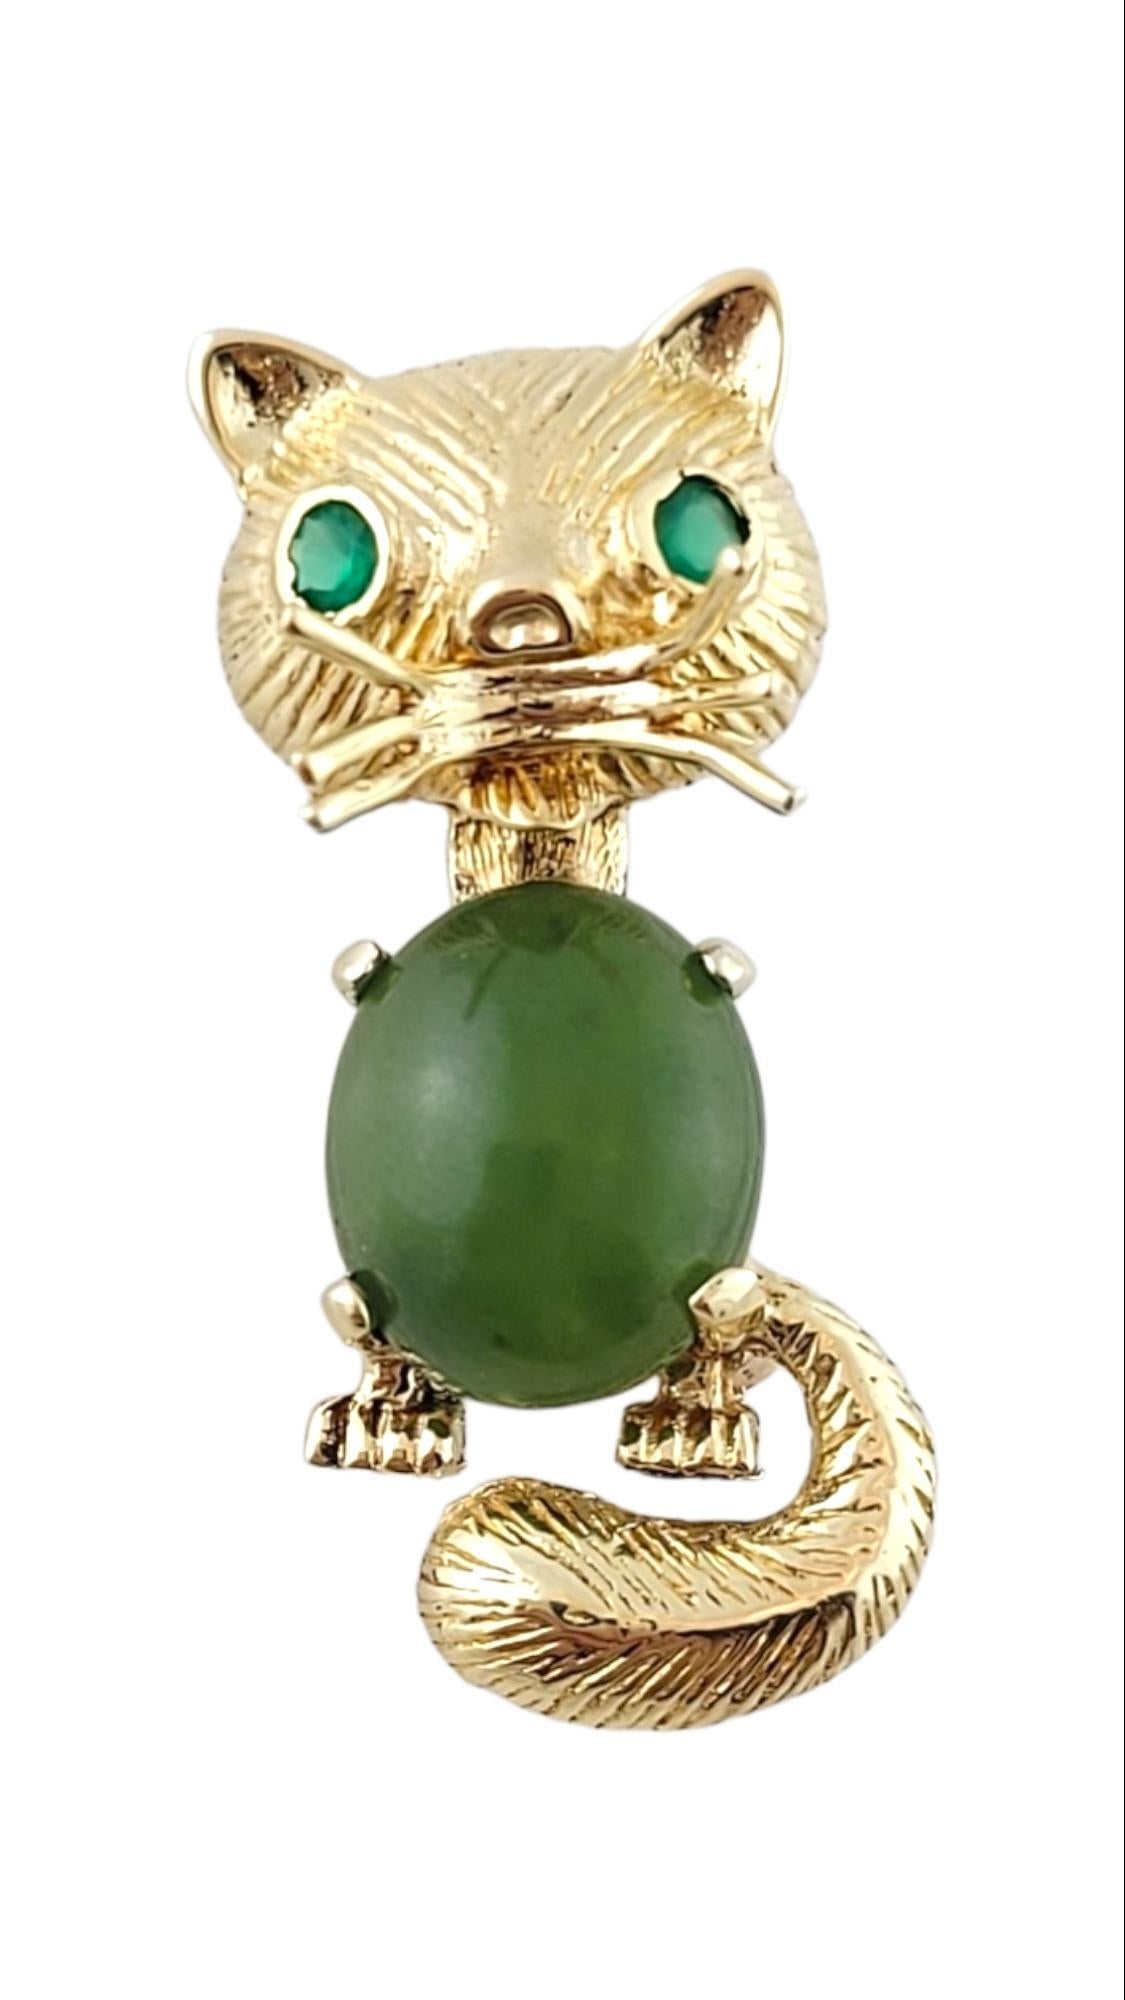 Épingle à chat en or jaune 14K avec pierres vertes

Cette adorable épingle à chat est fabriquée en or jaune 14 carats et comporte deux pierres vertes facettées pour représenter les yeux et une pierre de cabochon verte pour le corps du chat !

Taille